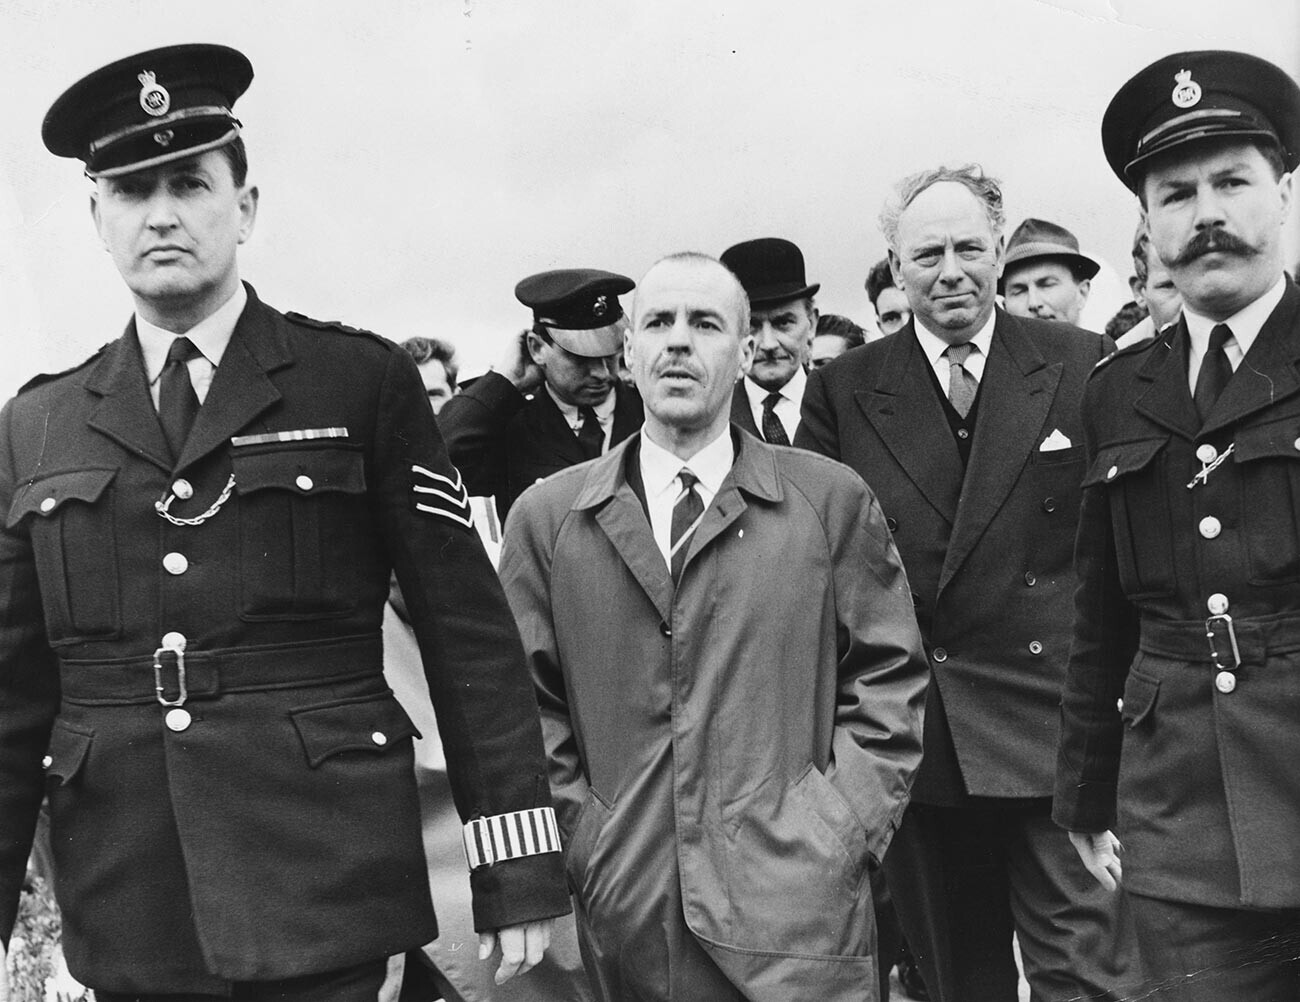 Greville Wynne dikawal polisi setelah pulang dari Uni Soviet, di Bandara Northolt, Inggris, 22 April 1964.